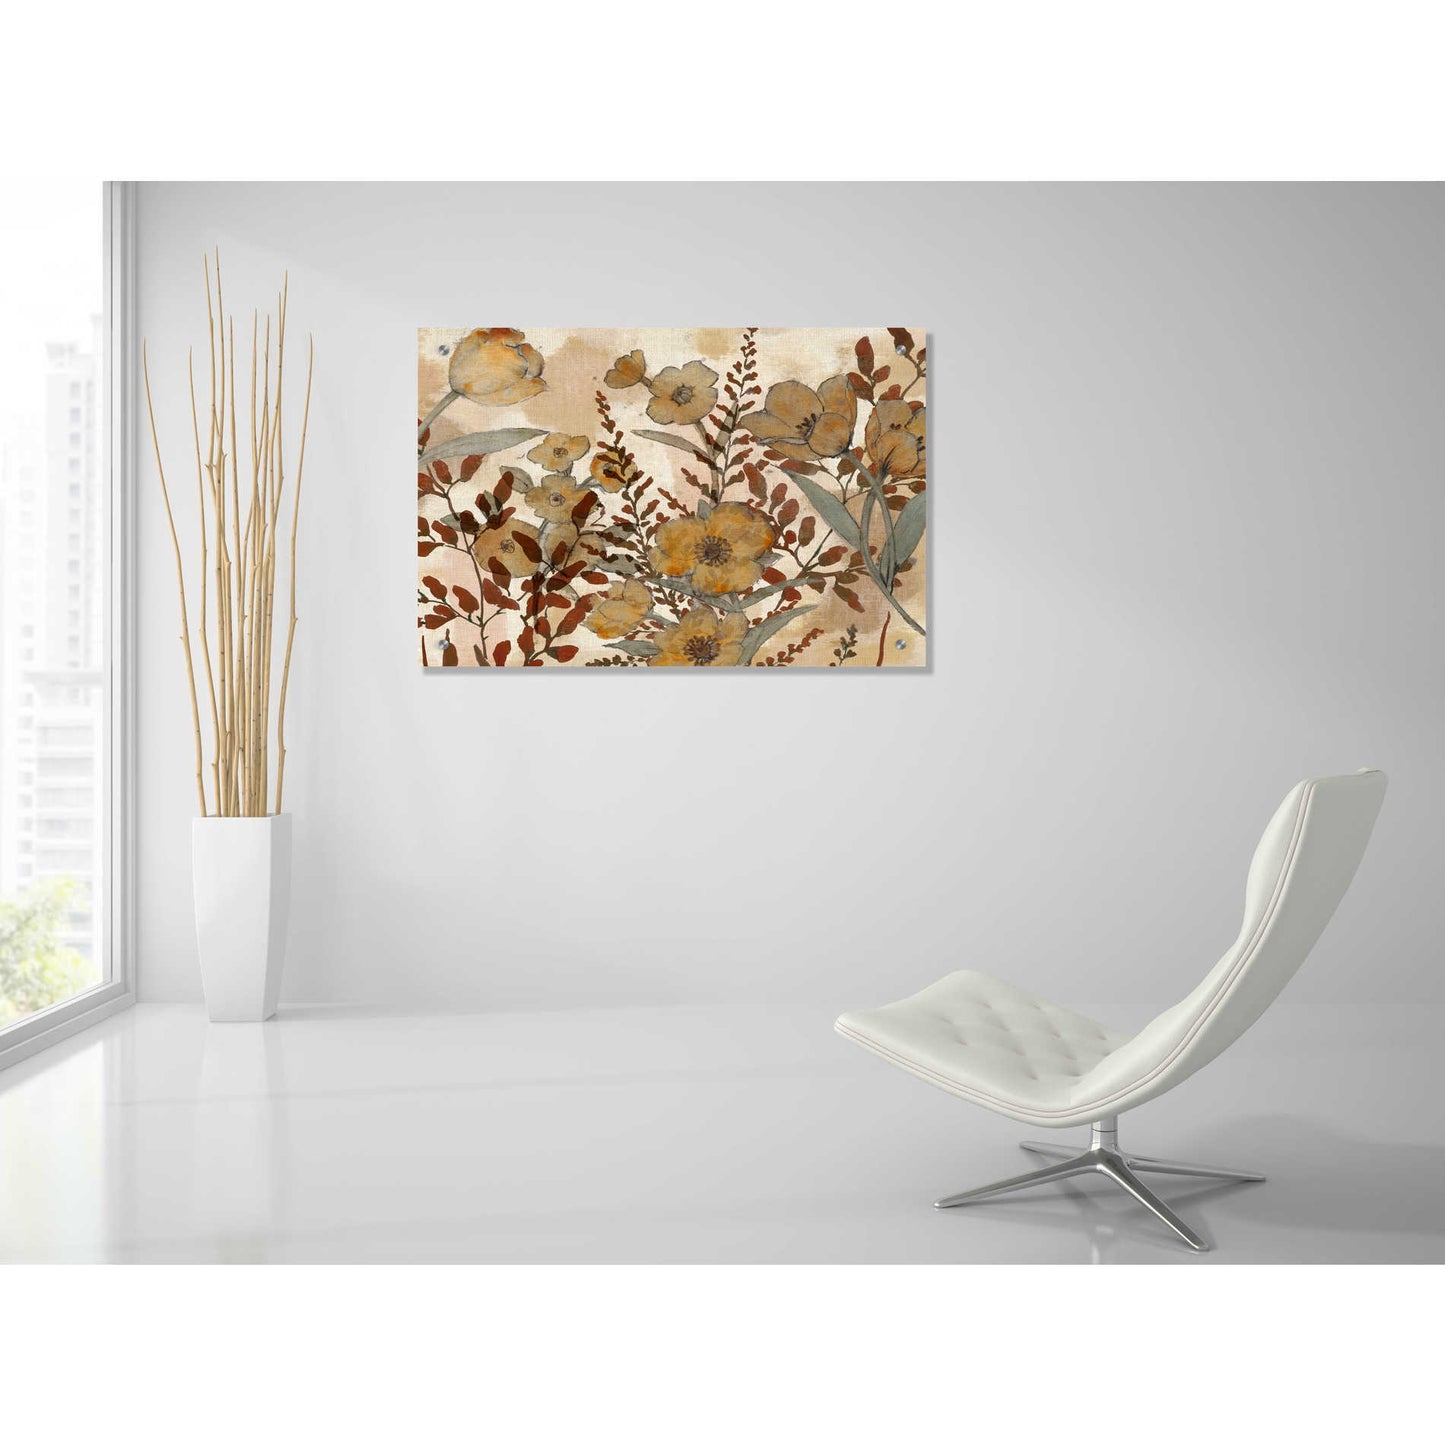 Epic Art 'Sienna Arrangement I' by Studio W, Acrylic Glass Wall Art,36x24